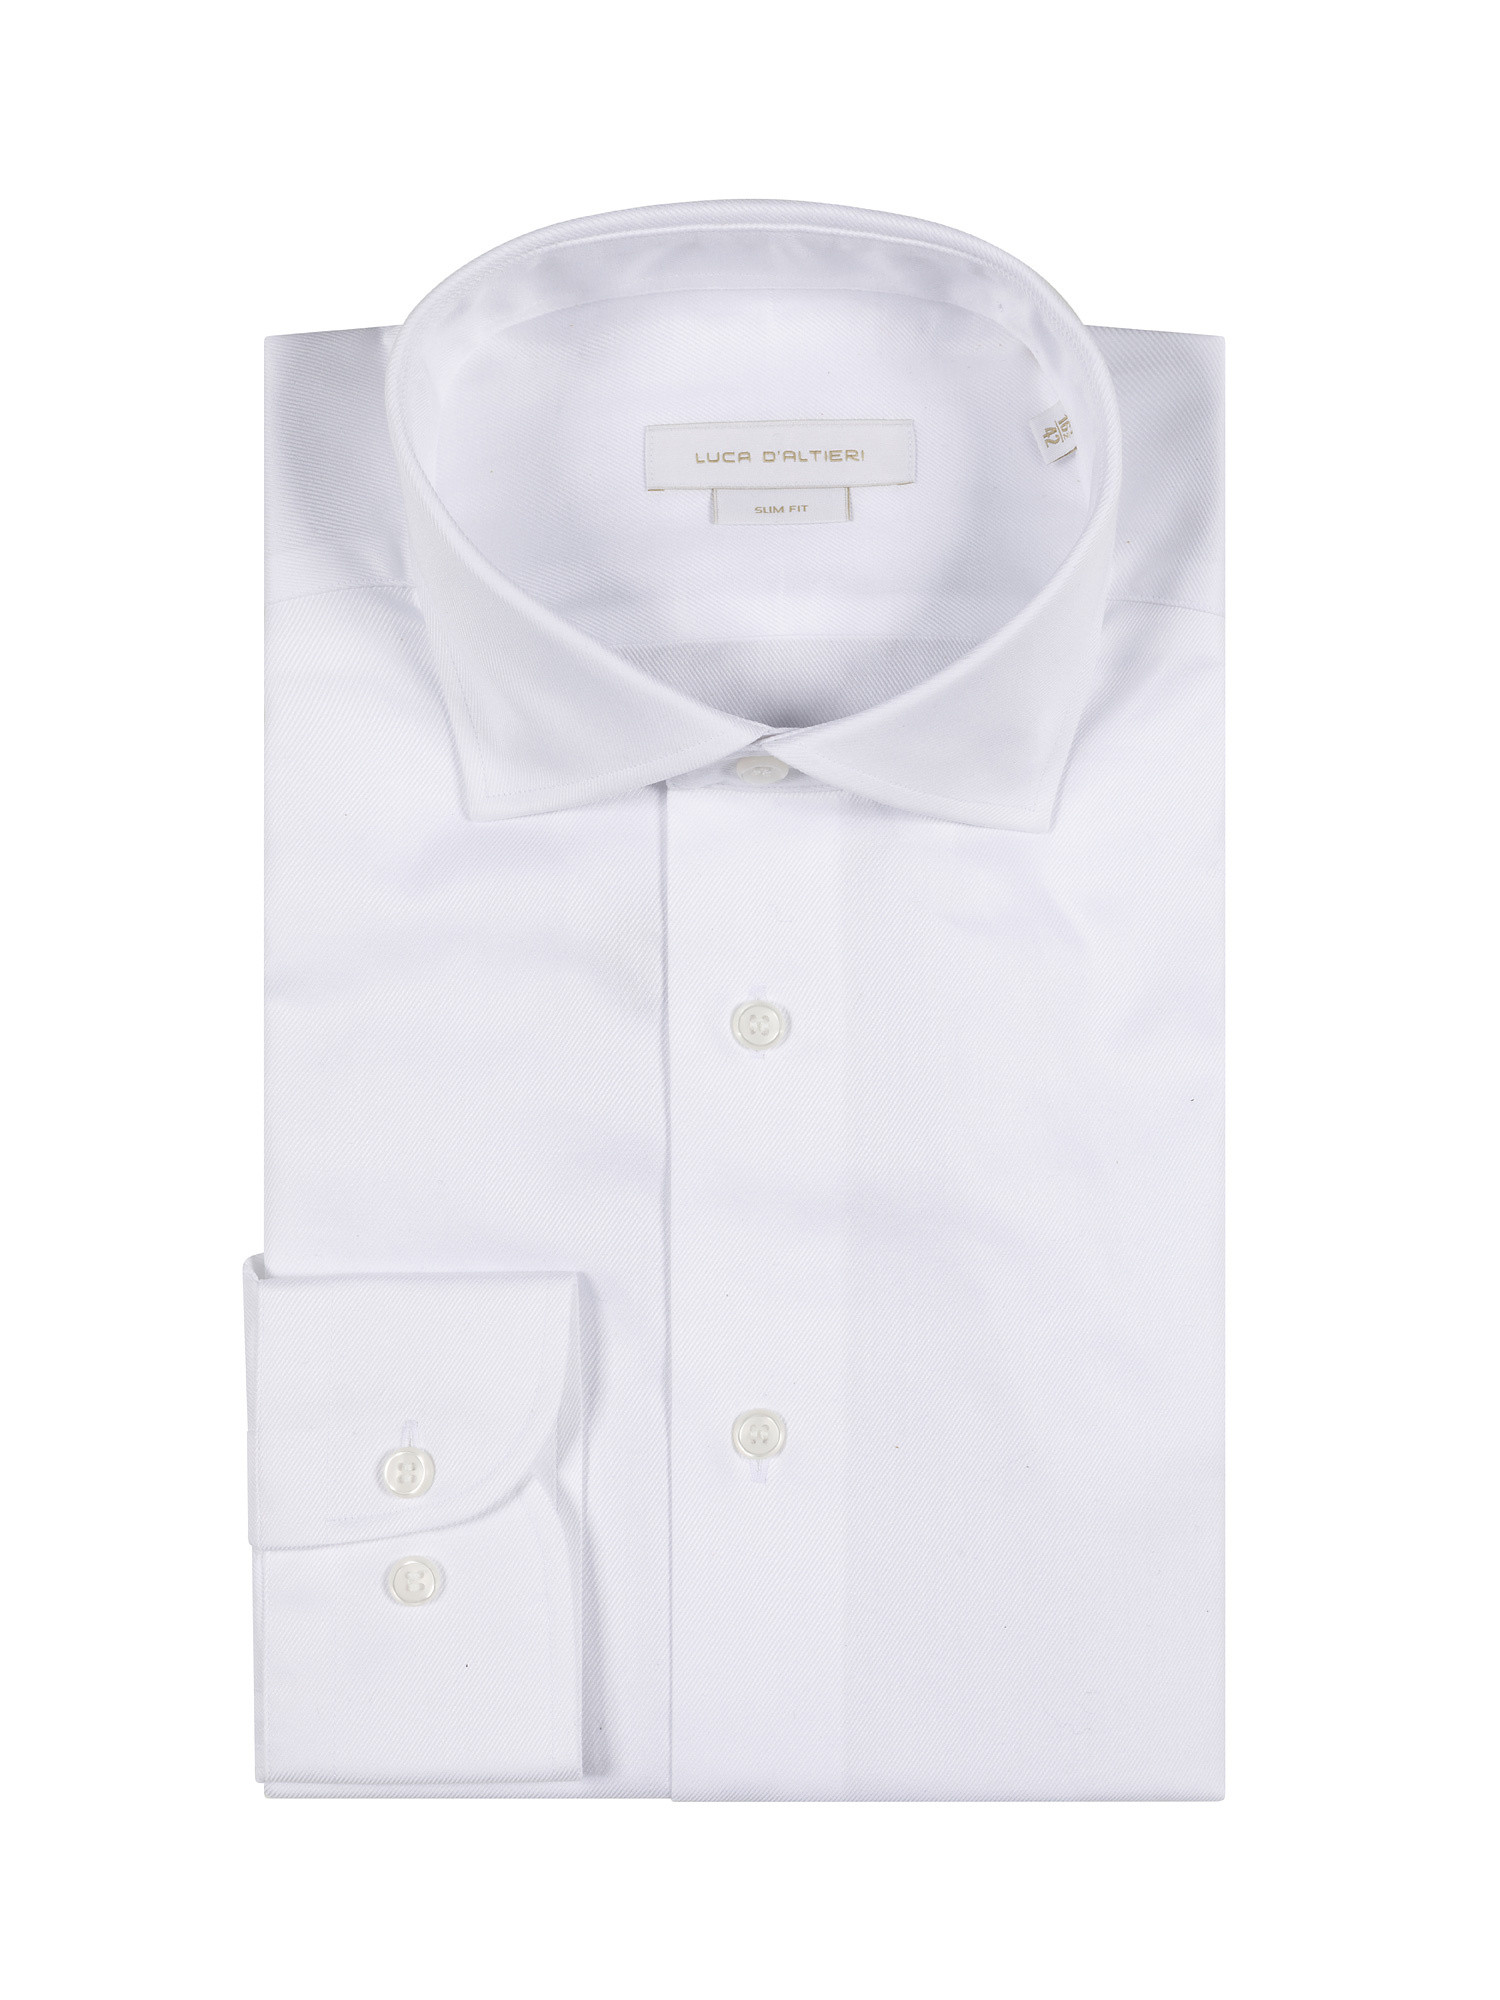 Camicia slim fit in twill di cotone, Bianco, large